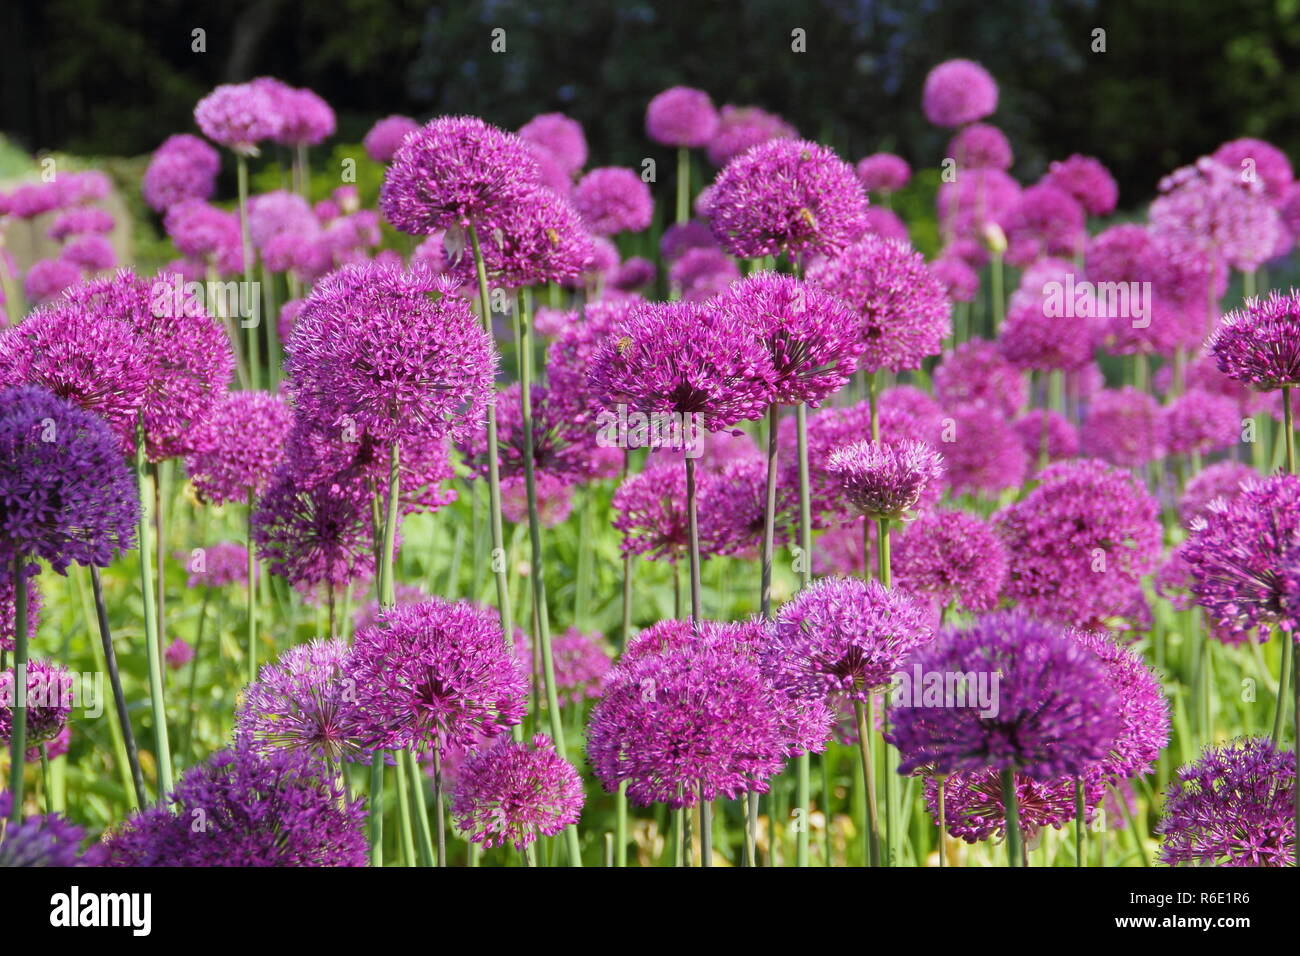 Allium hollandicum 'Purple Sensation', oder Niederländische Knoblauch; riesige ornamentale Zwiebeln, Blüte im Garten Grenze, Frühling, Großbritannien Stockfoto